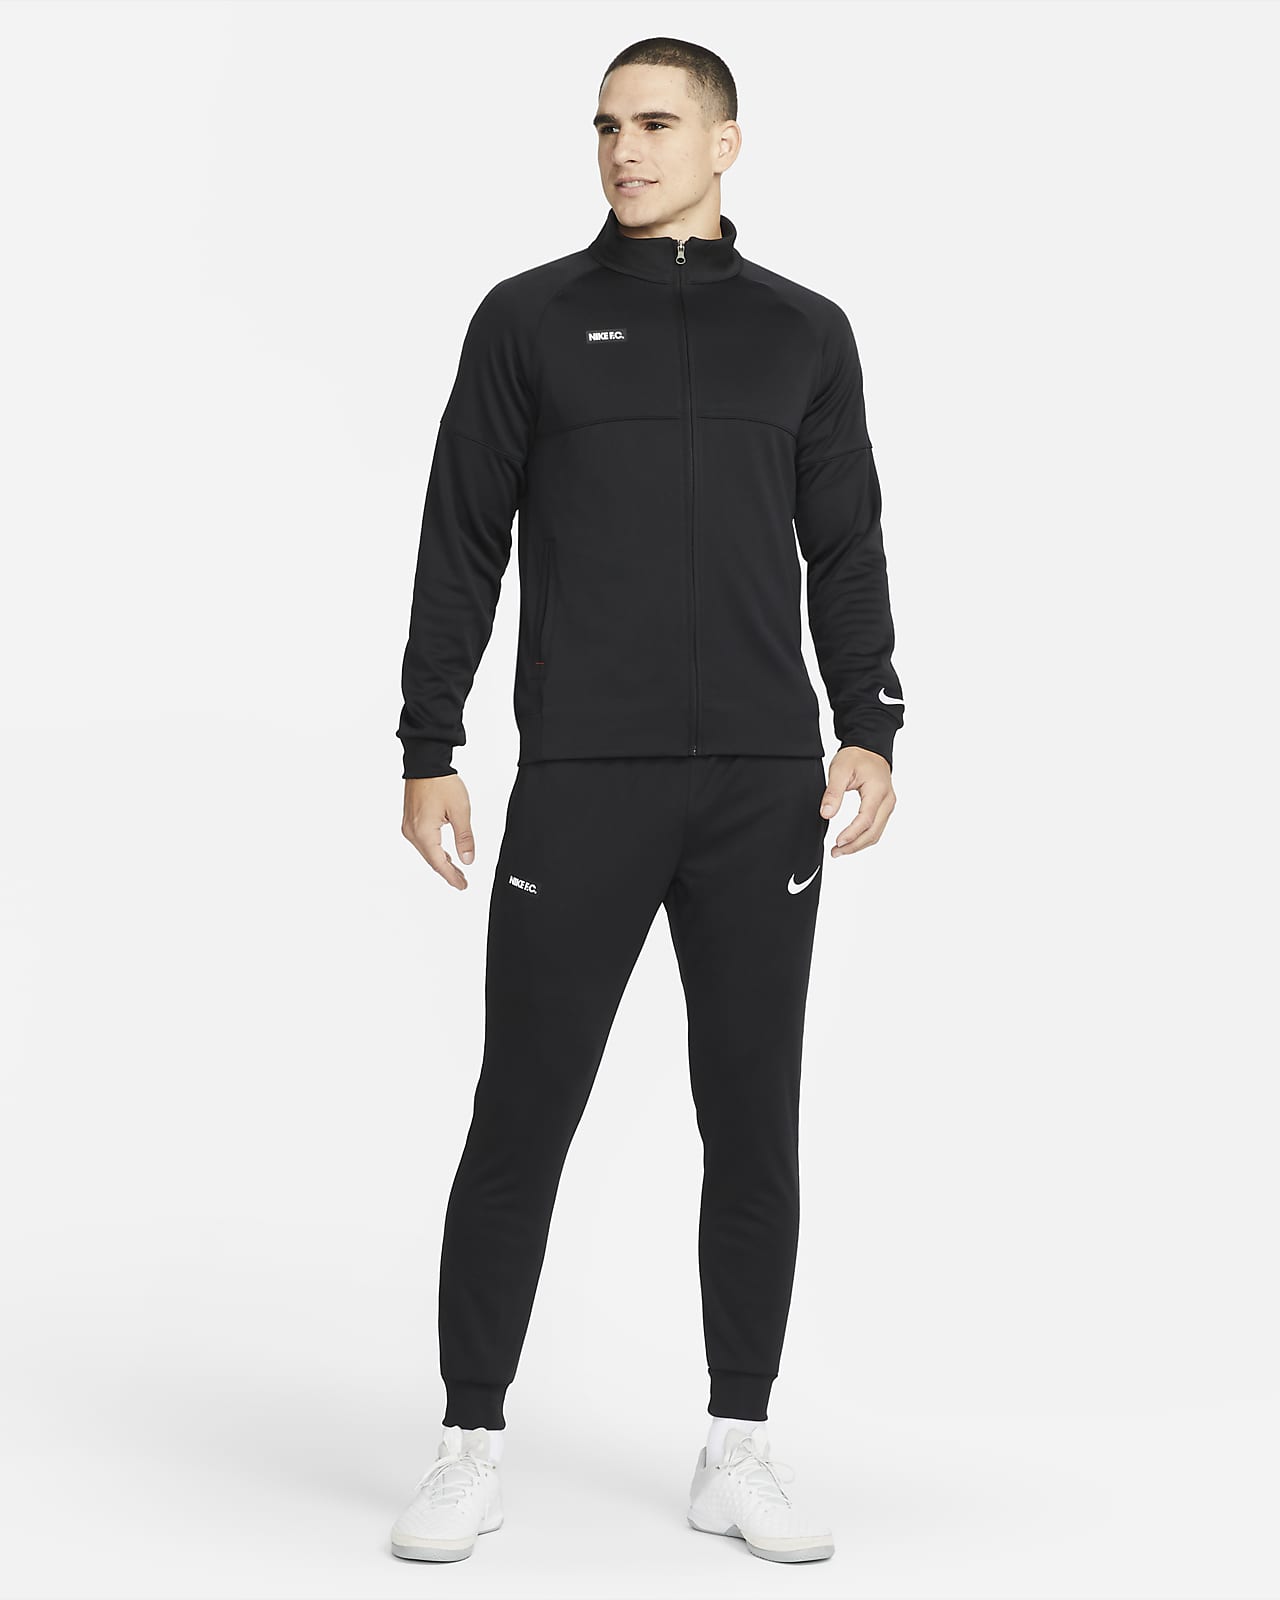 Nike F.C. Fußball-Trainingsanzug für Herren